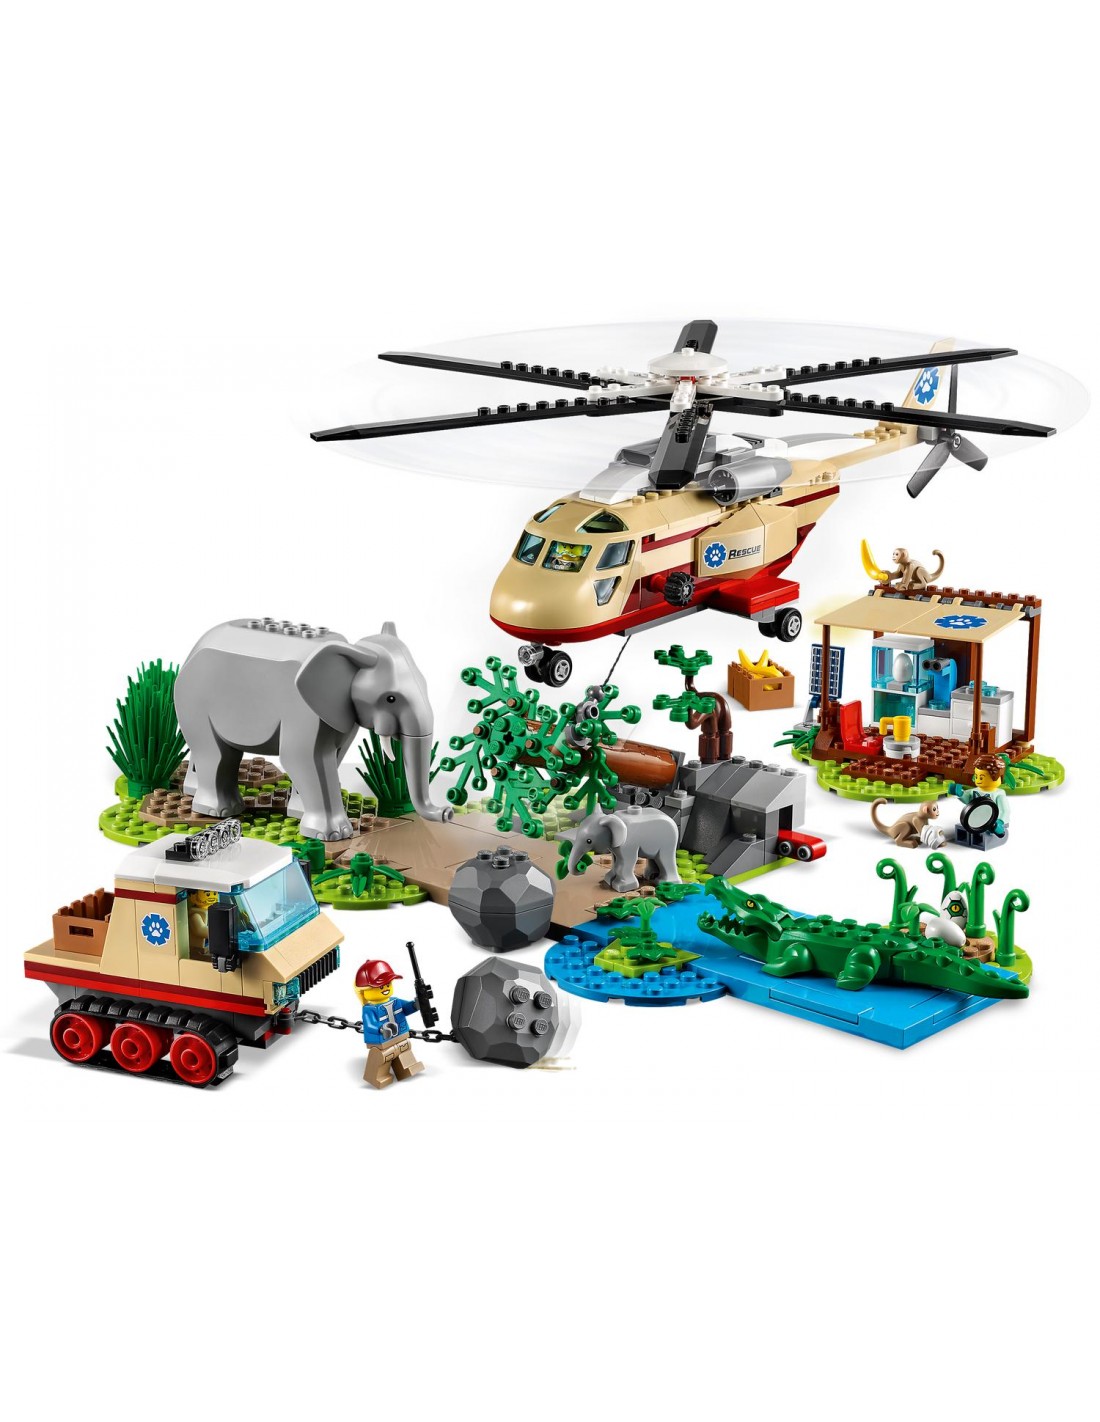 LEGO City Wildlife Επιχείρηση Διάσωσης Άγριων Ζώων  60302 - LEGO, LEGO City